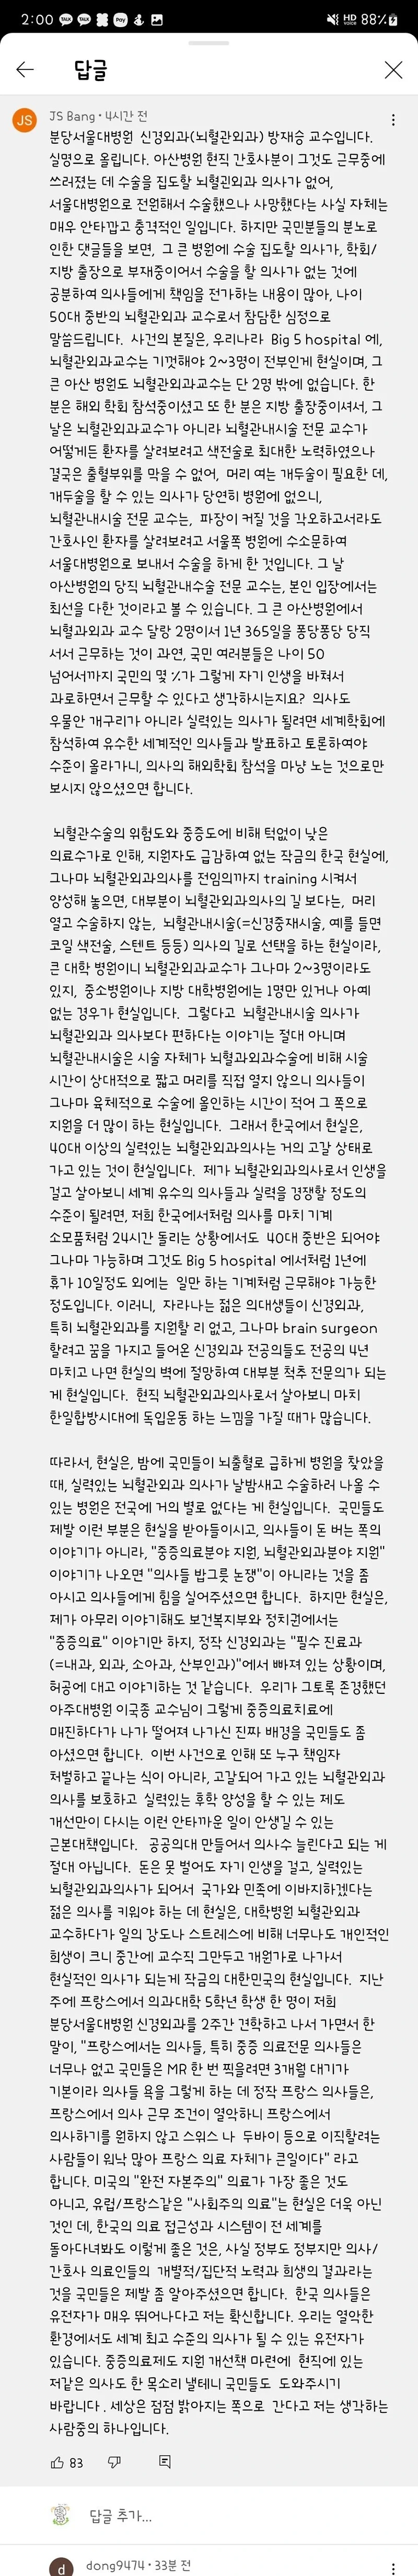 아산병원 간호사 사망관련 서울대병원 교수 글